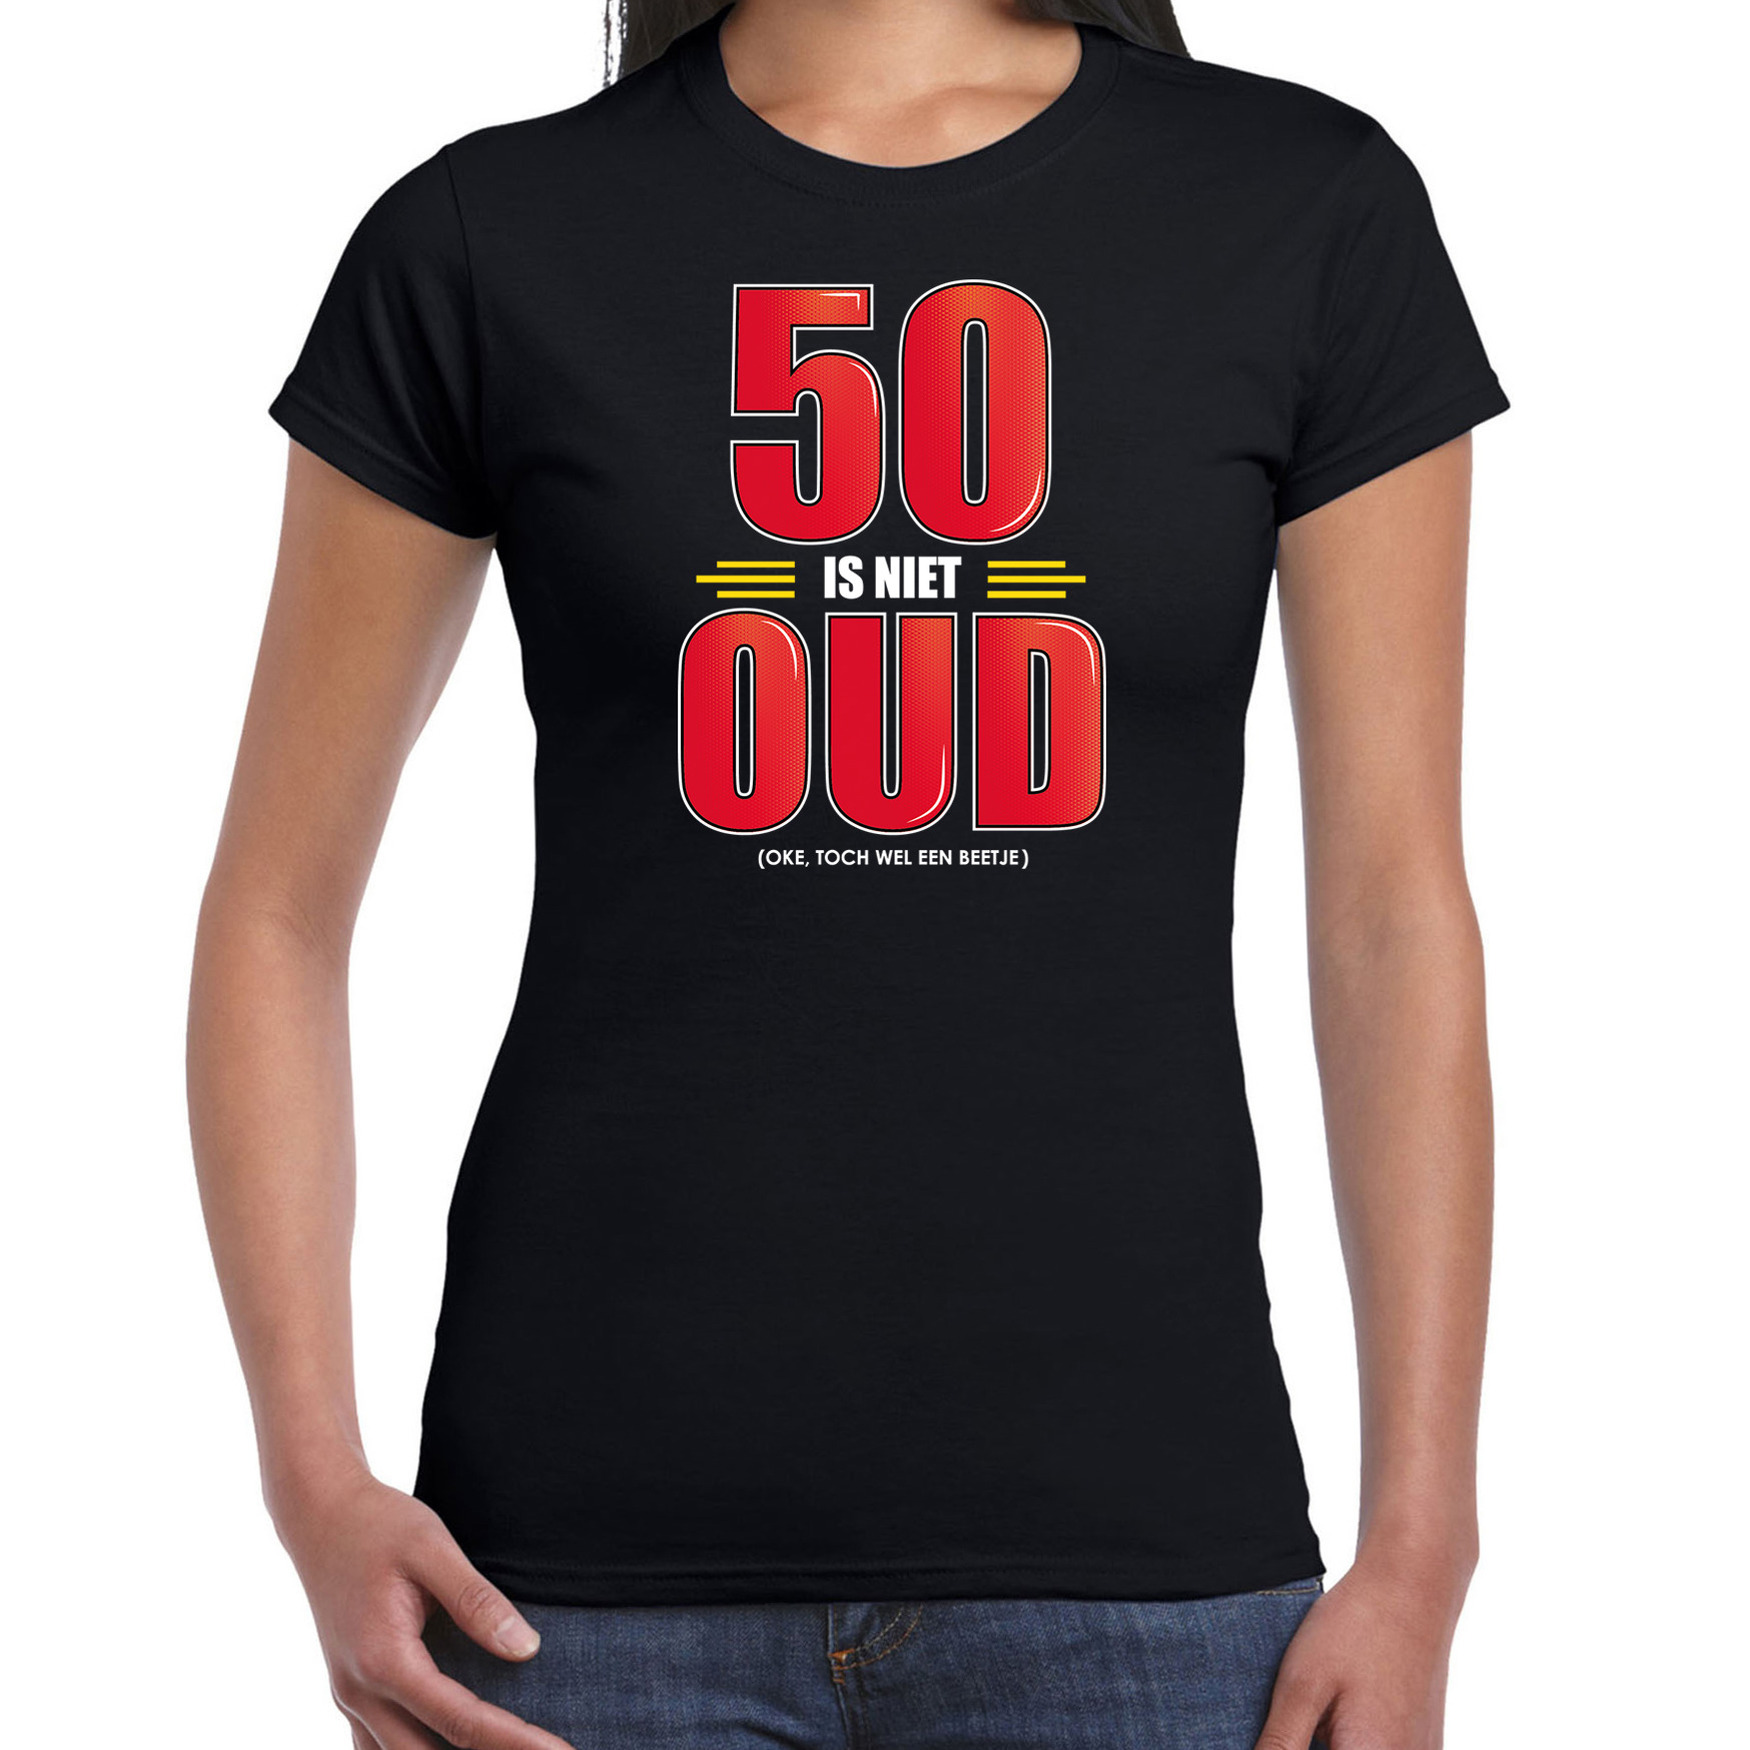 50 is niet oud verjaardag cadeau-Sarah t-shirt zwart voor dames